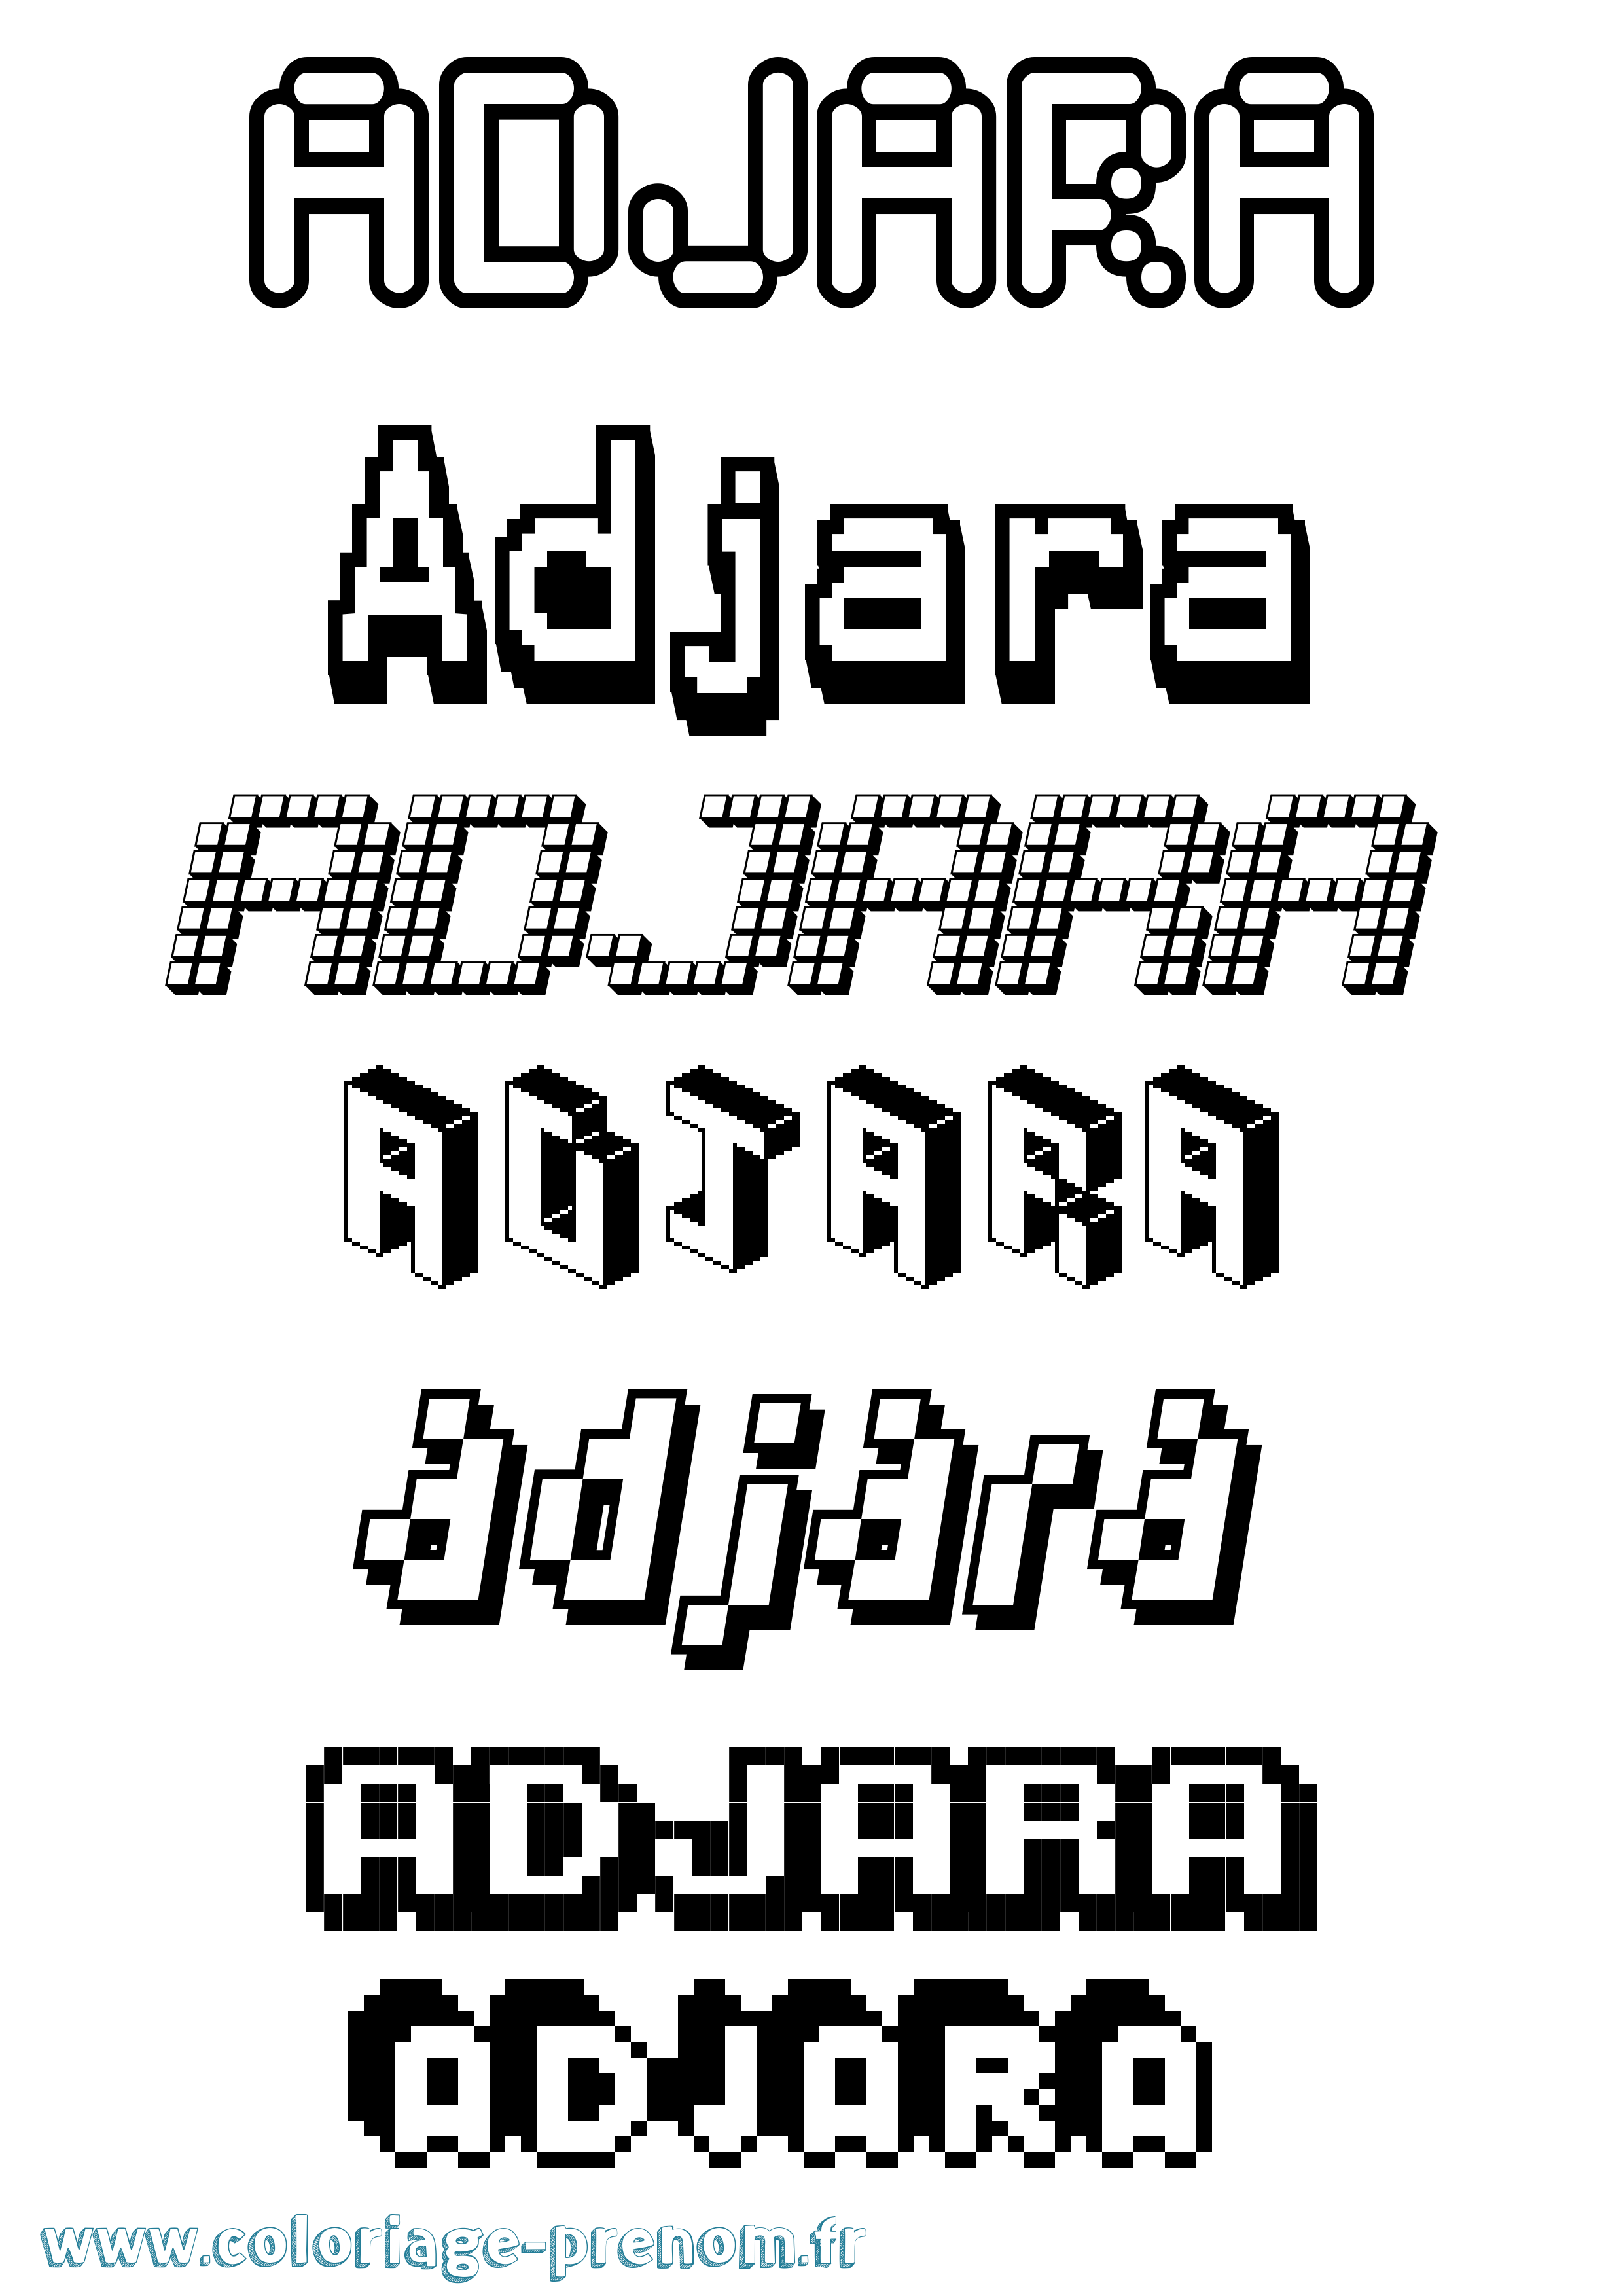 Coloriage prénom Adjara Pixel